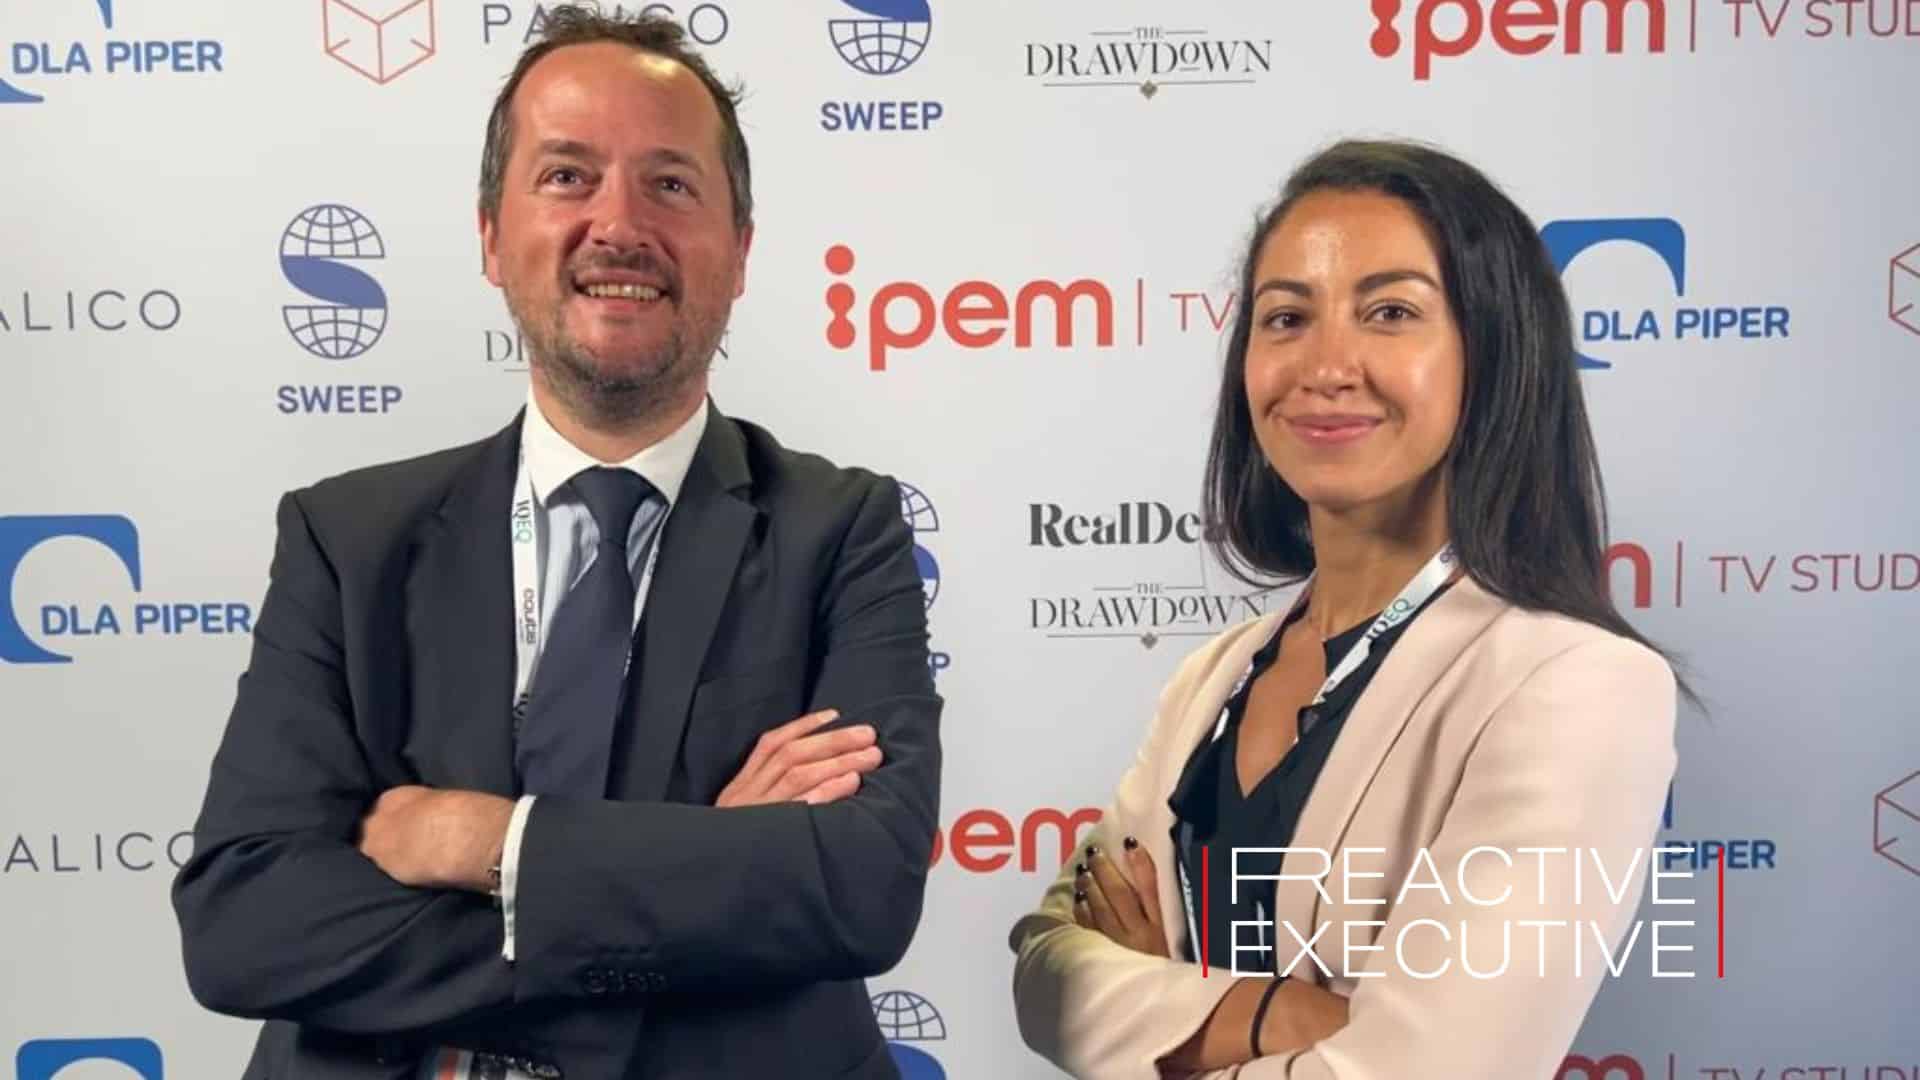 Reactive Executive present at IPEM Cannes 2022